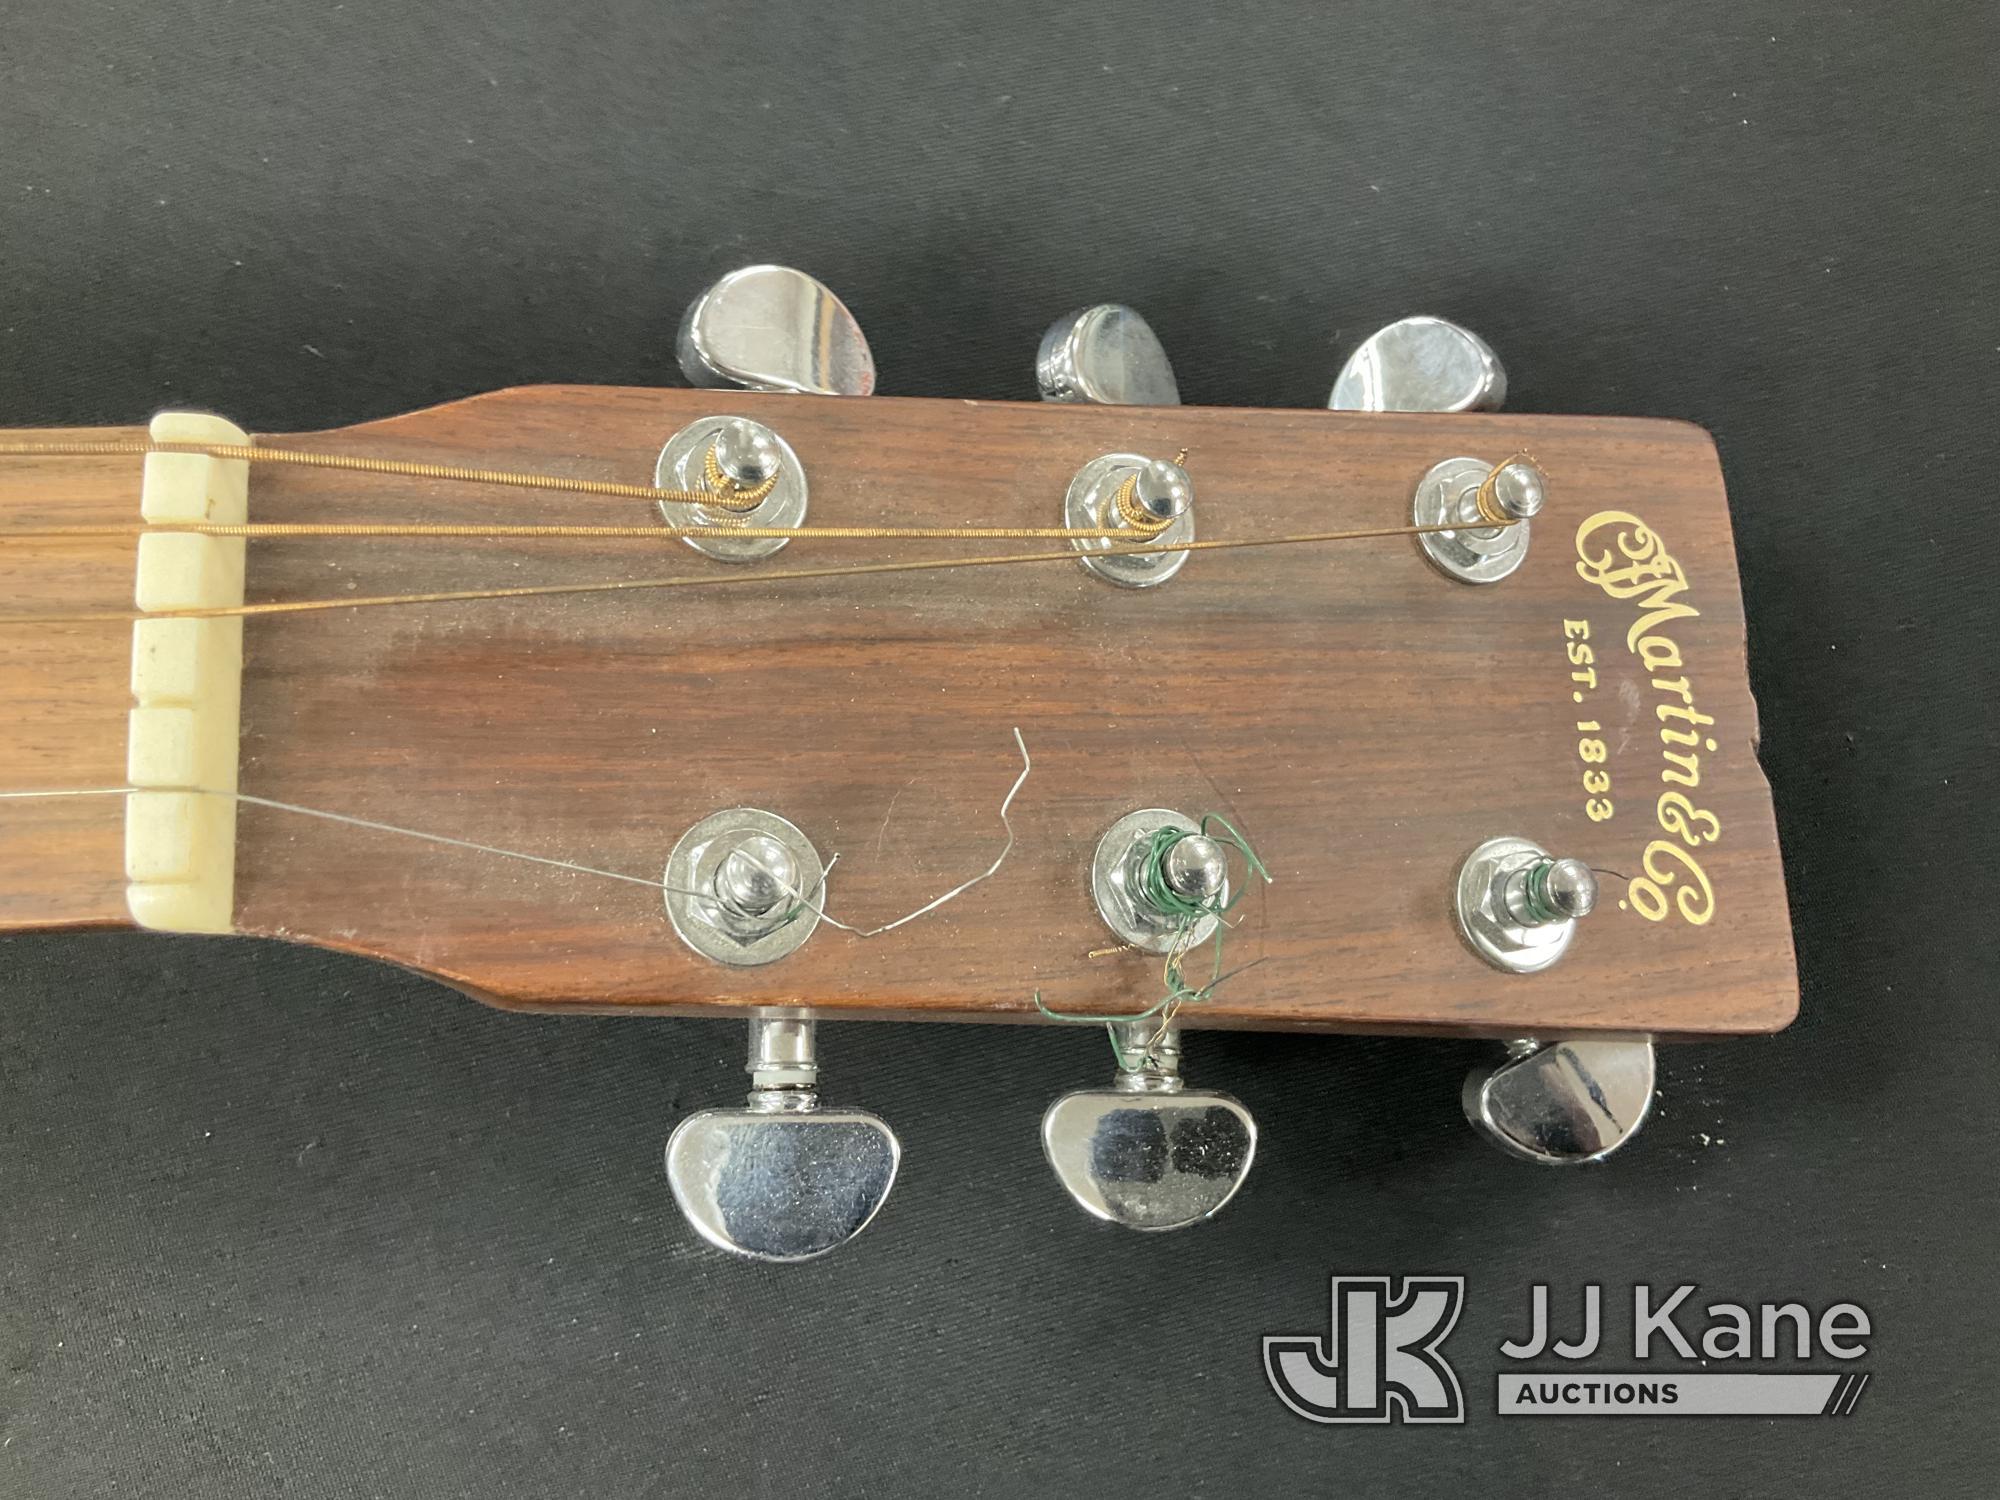 (Jurupa Valley, CA) Martin Guitar Used